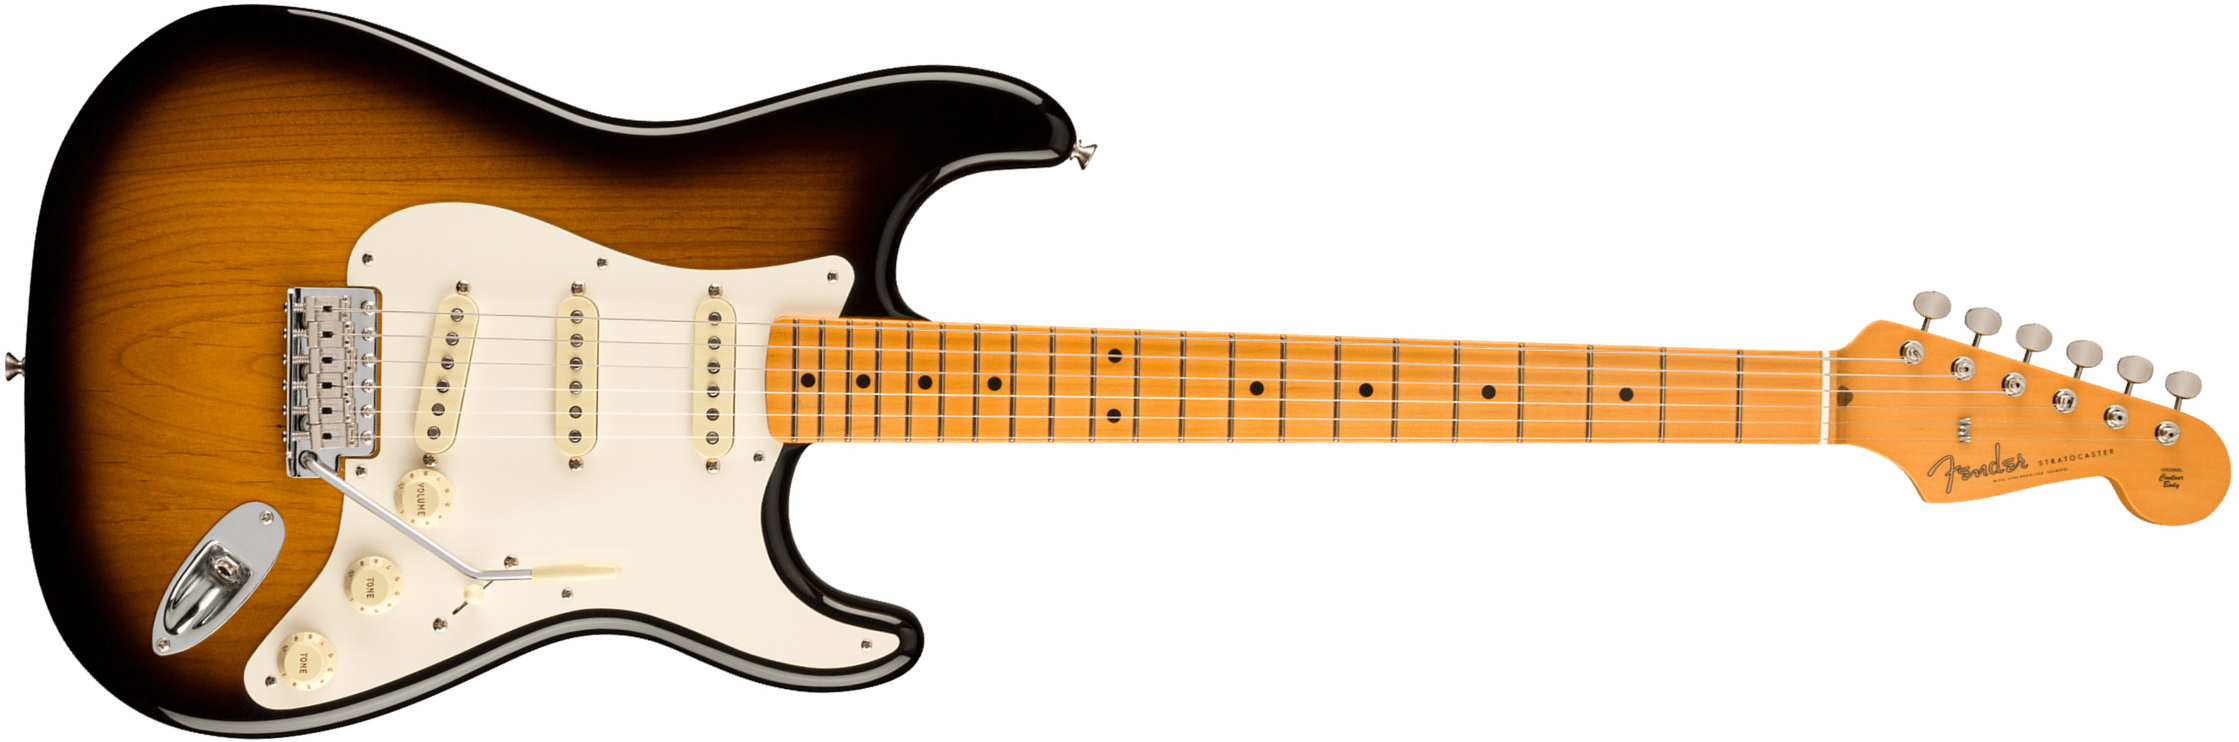 Fender Strat 1957 American Vintage Ii Usa 3s Trem Mn - 2-color Sunburst - E-Gitarre in Str-Form - Main picture